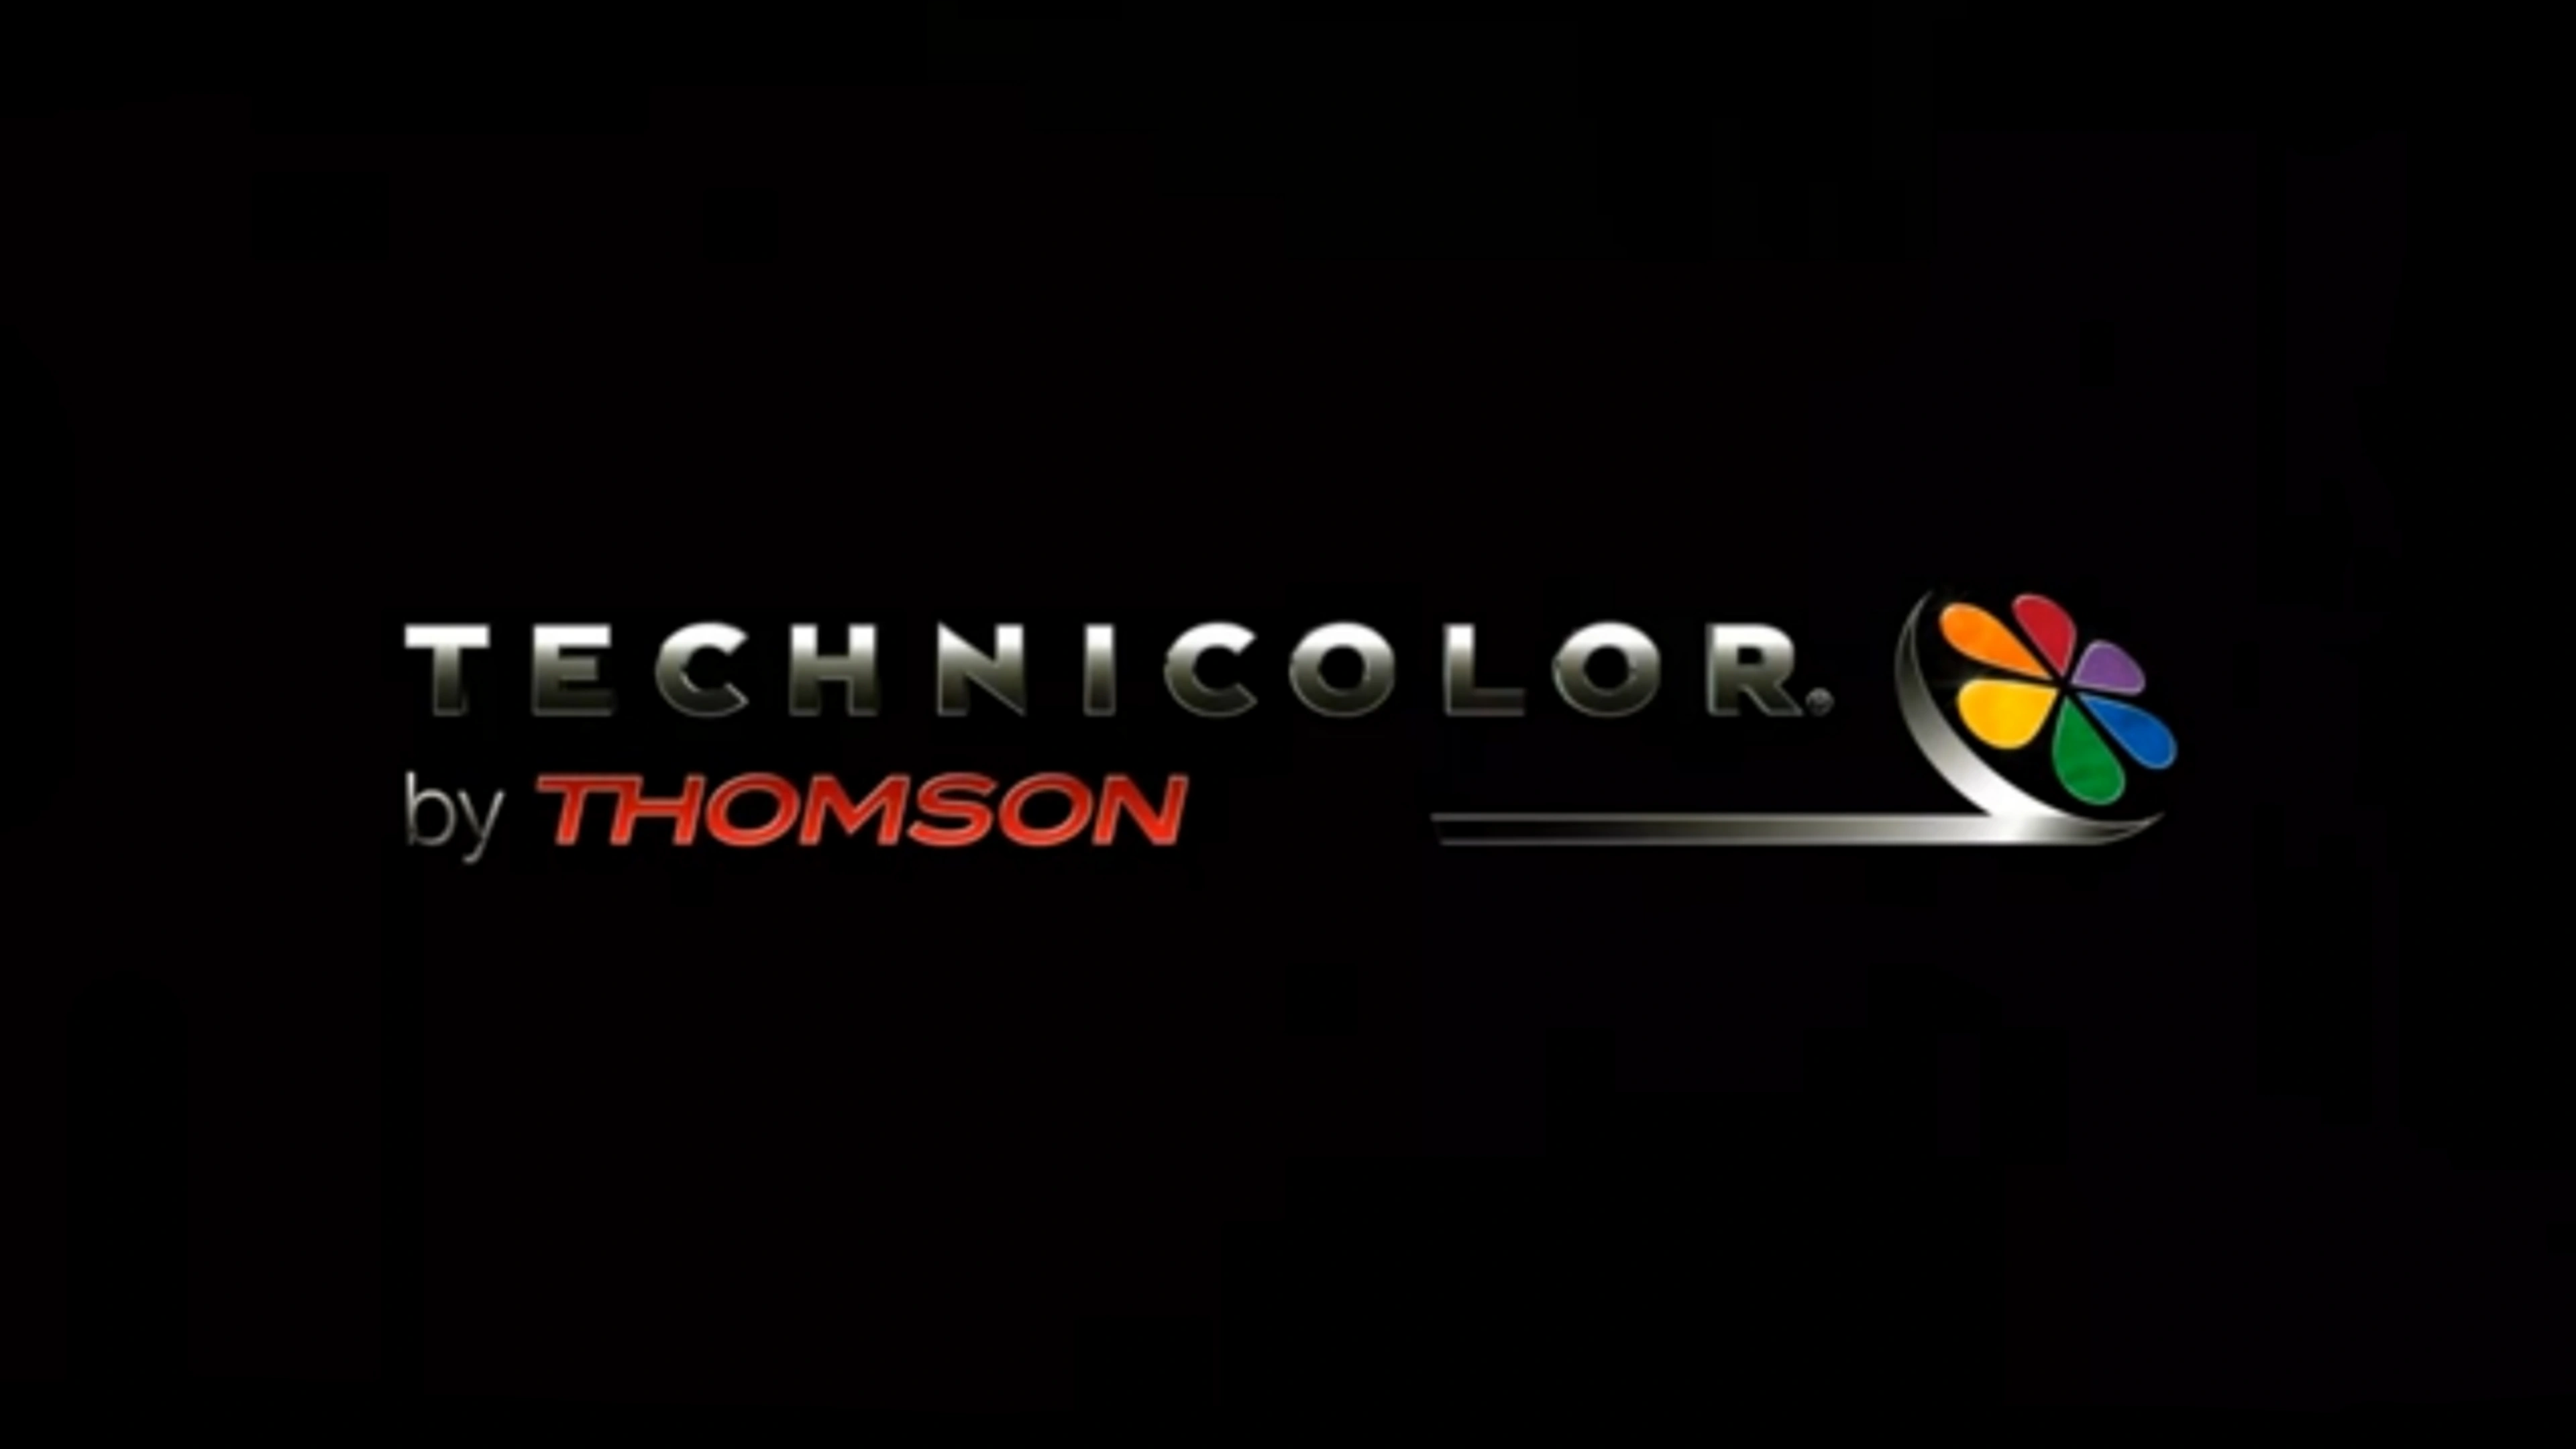 Technicolor - Thomson